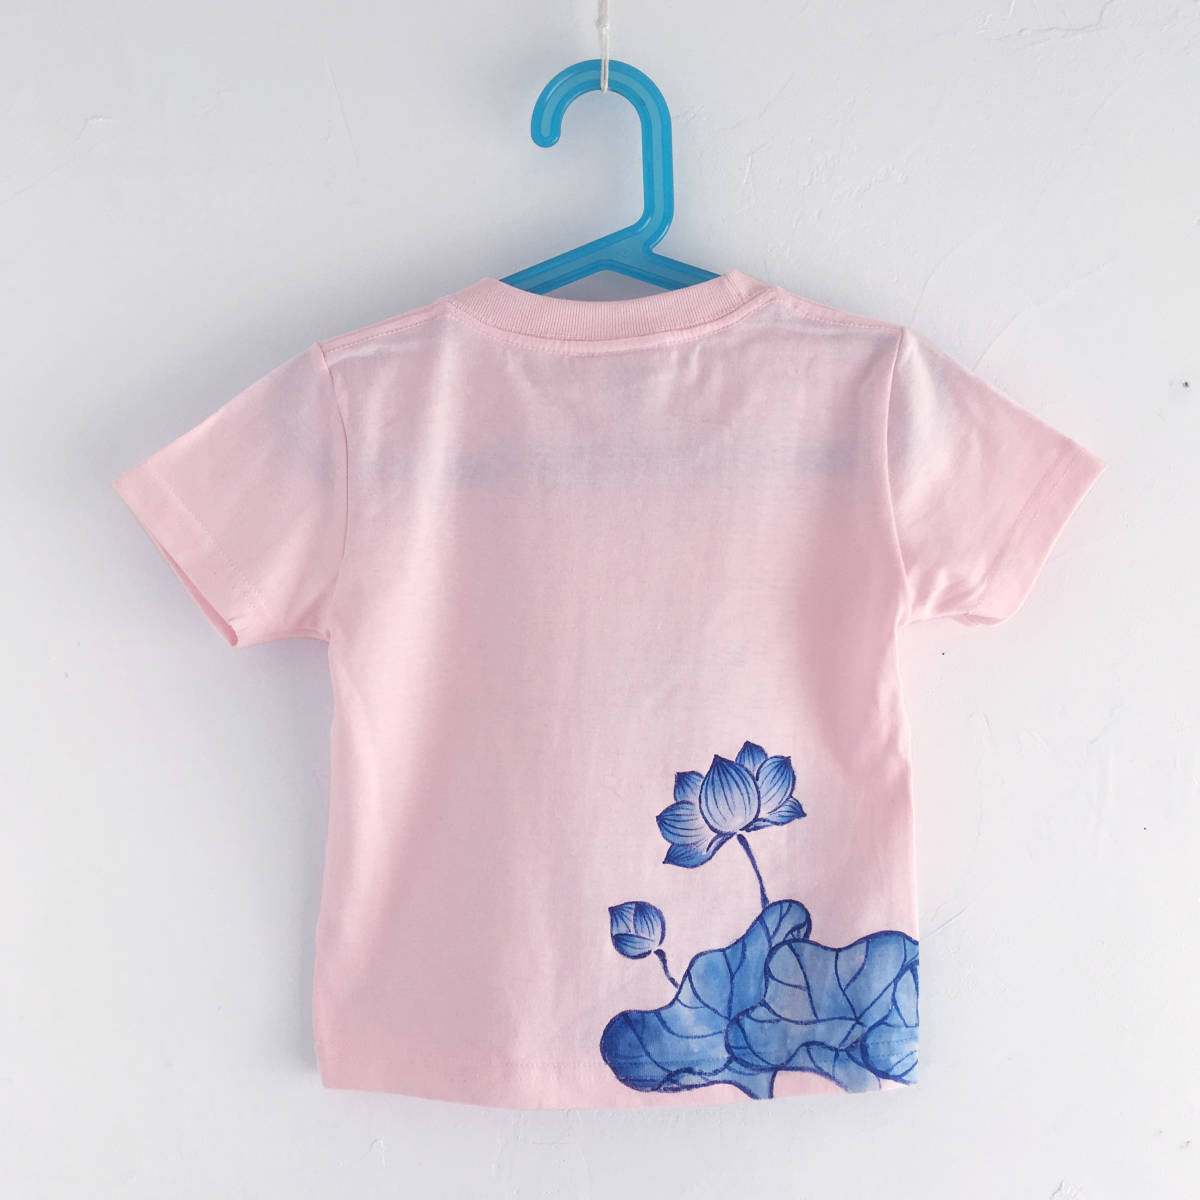 キッズ Tシャツ 100サイズ ピンク 蓮柄Tシャツ 手描きで描いた蓮の花柄Tシャツ 半袖 和柄 和風 レトロ ハンドメイド